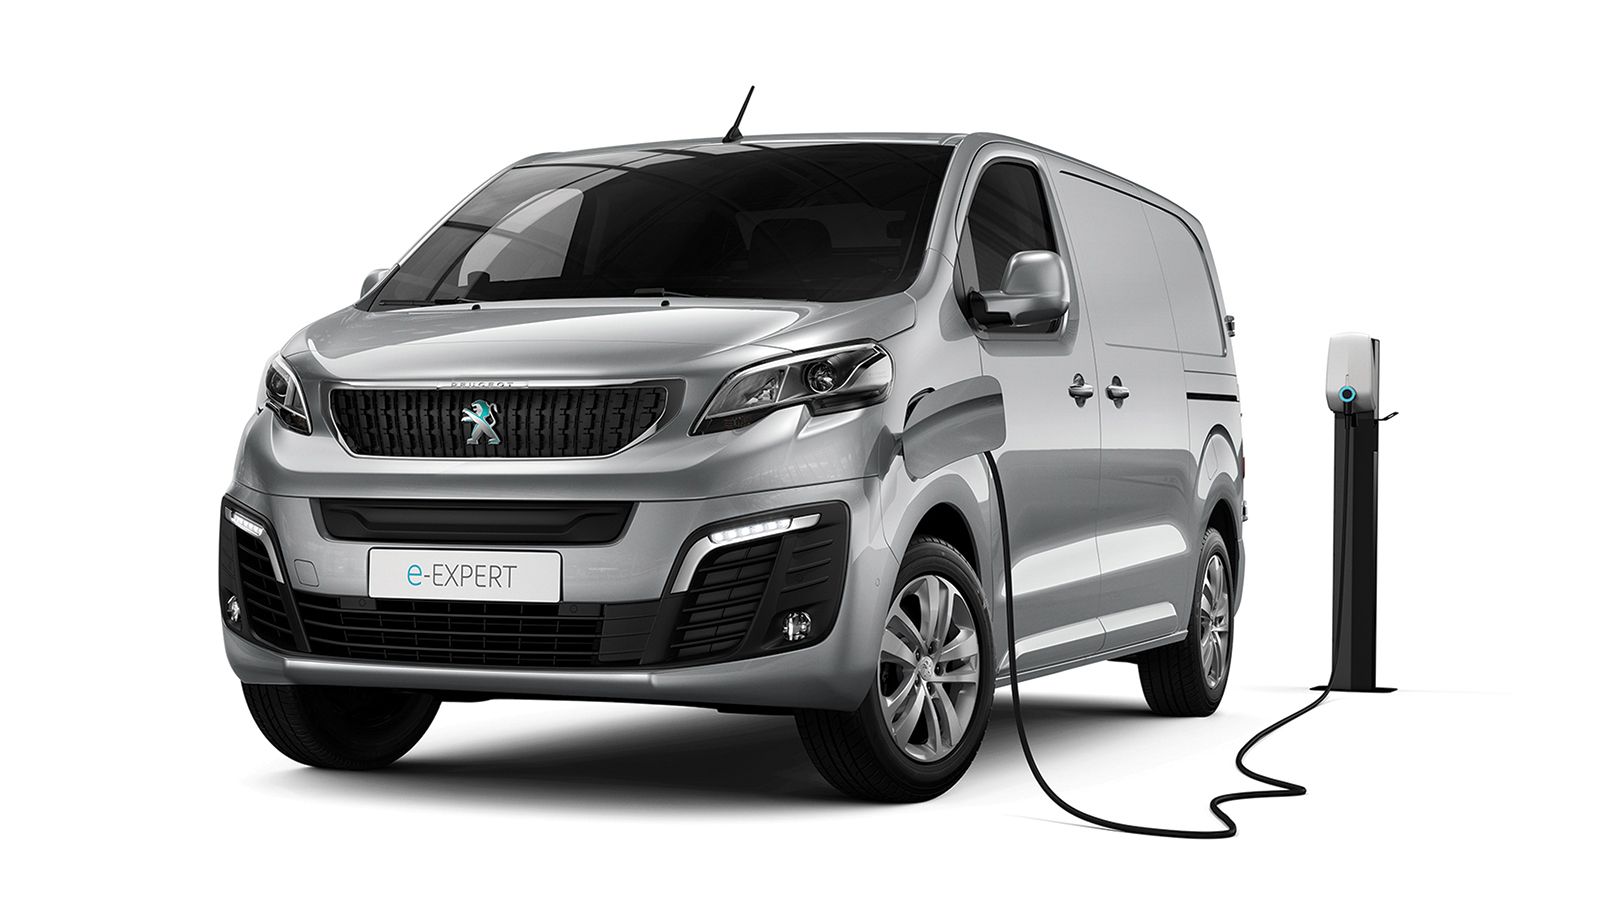 Η αμιγώς ηλεκτρική έκδοση του Peugeot Expert έχει αντίστοιχες μεταφορικές δυνατότητες με τις συμβατικές. 